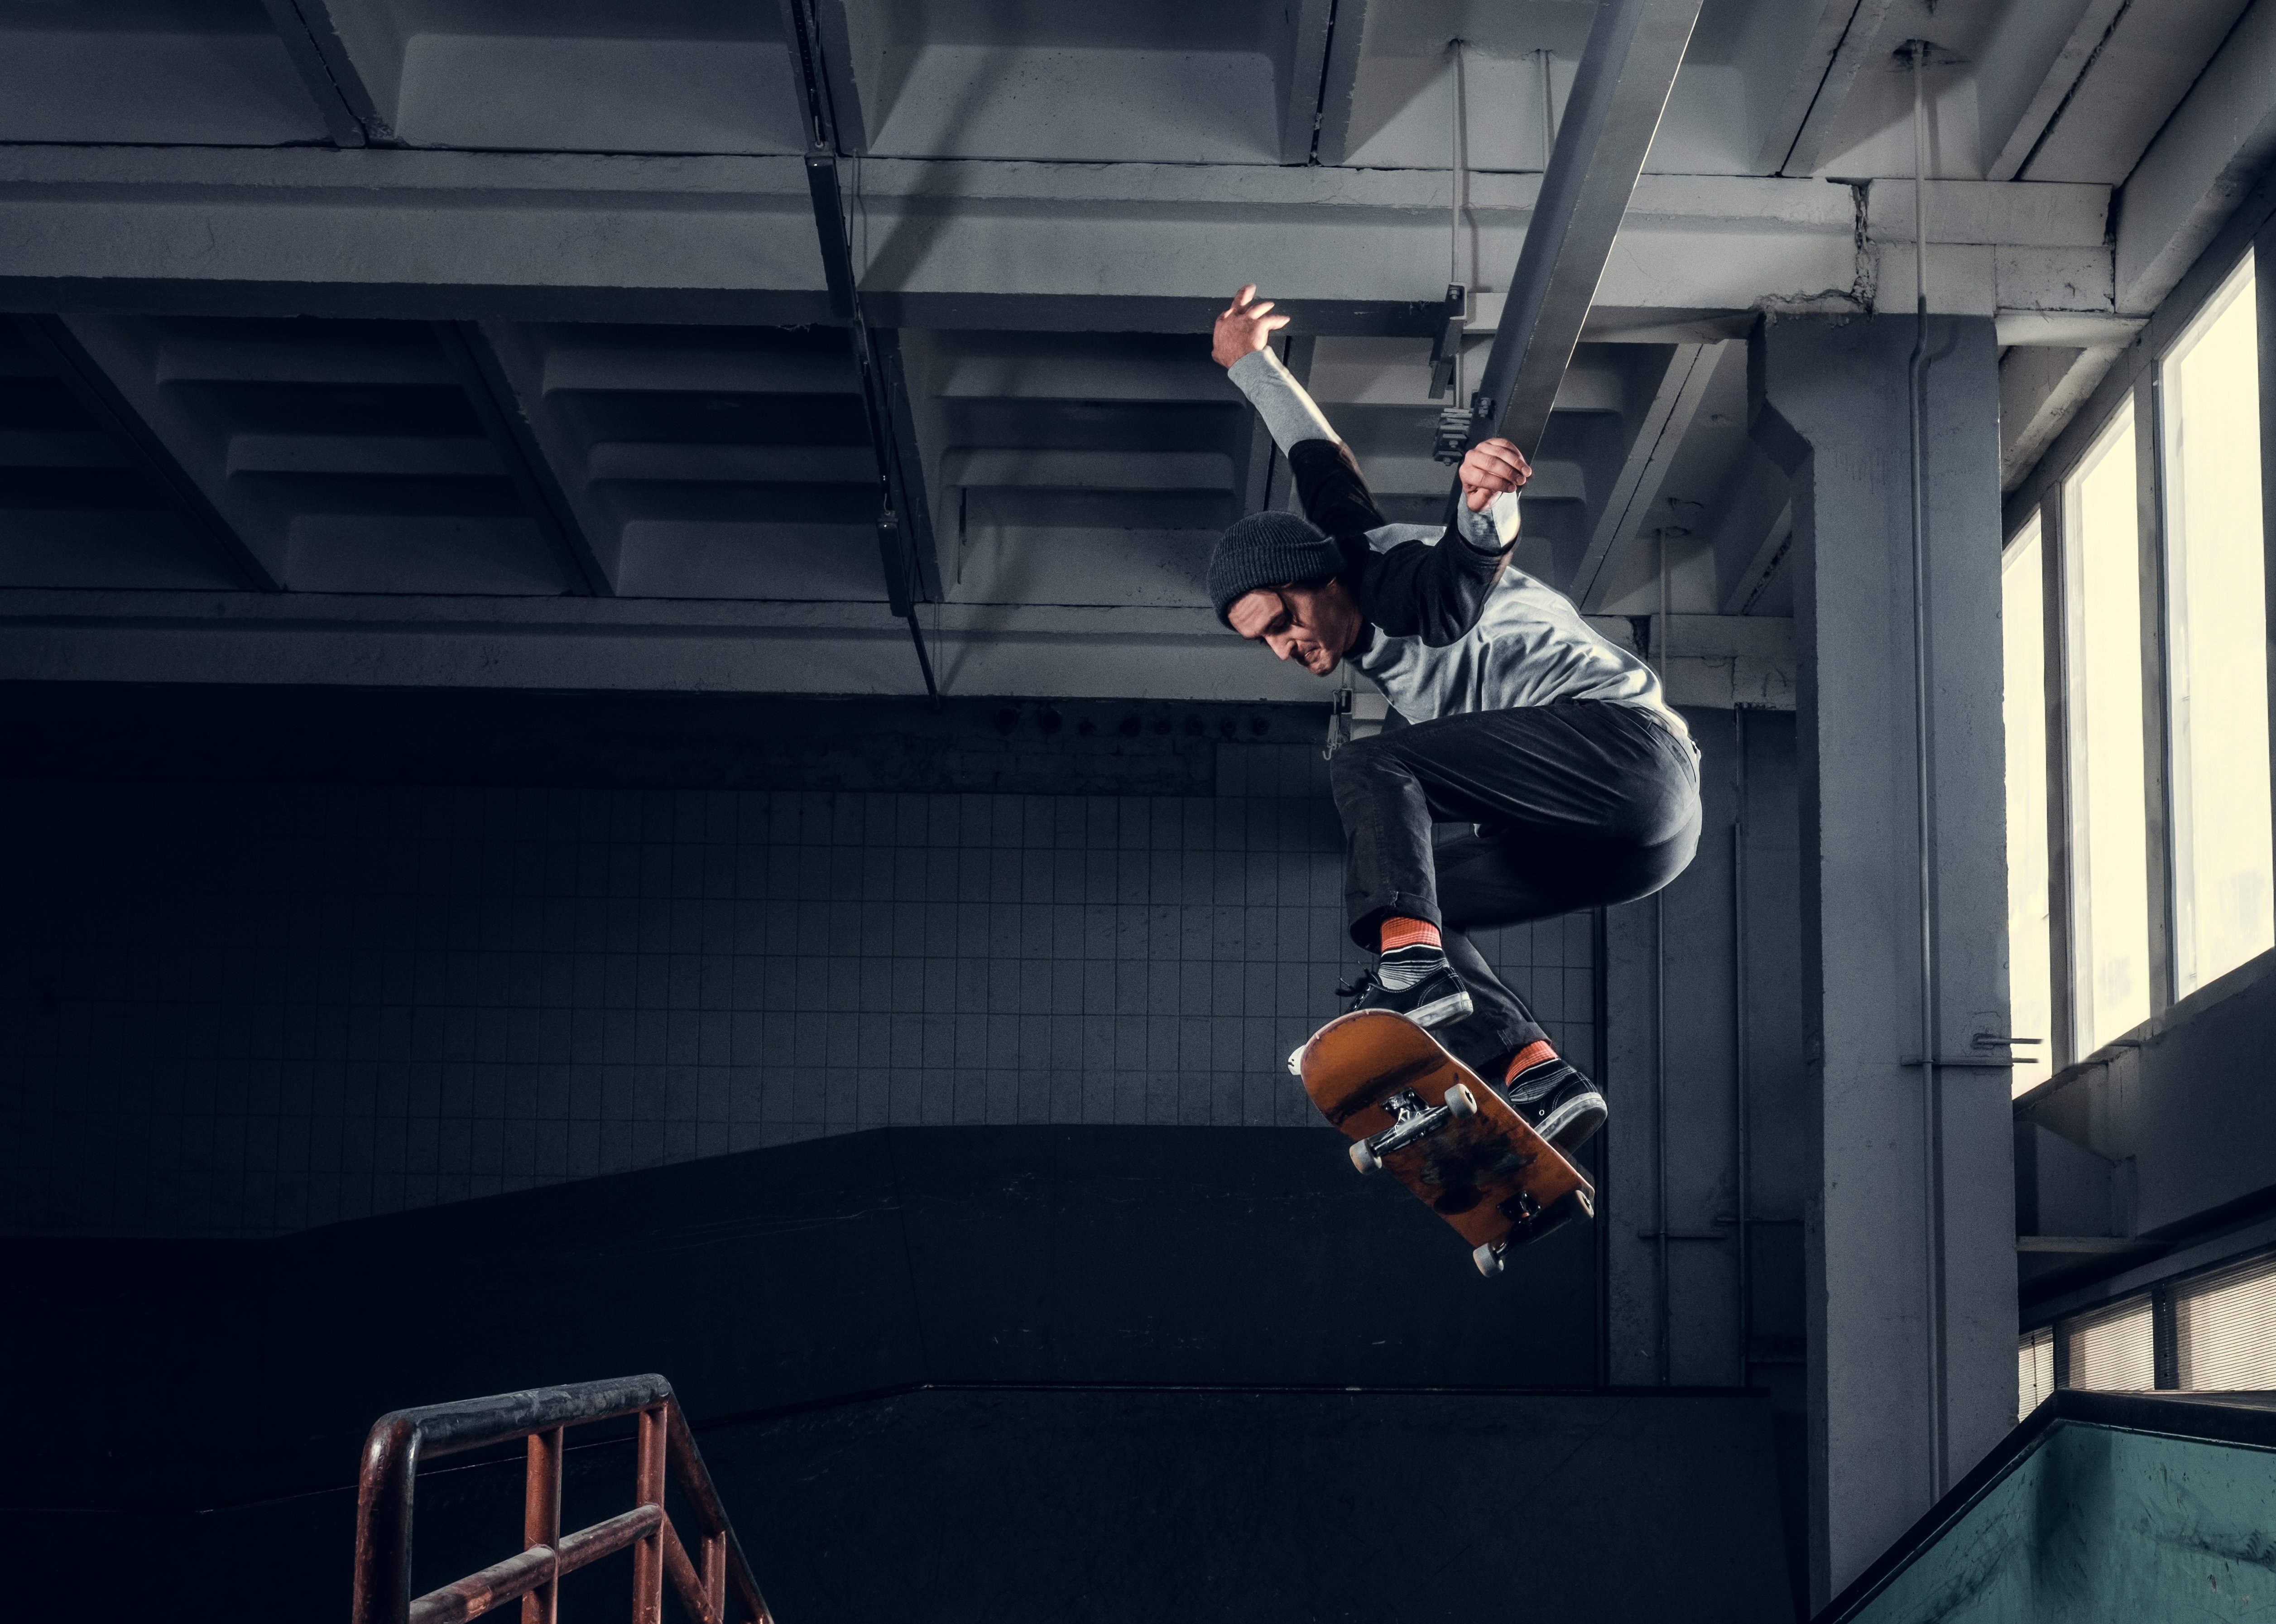 young-skateboarder-at-skate-park-indoor-NV5DREU